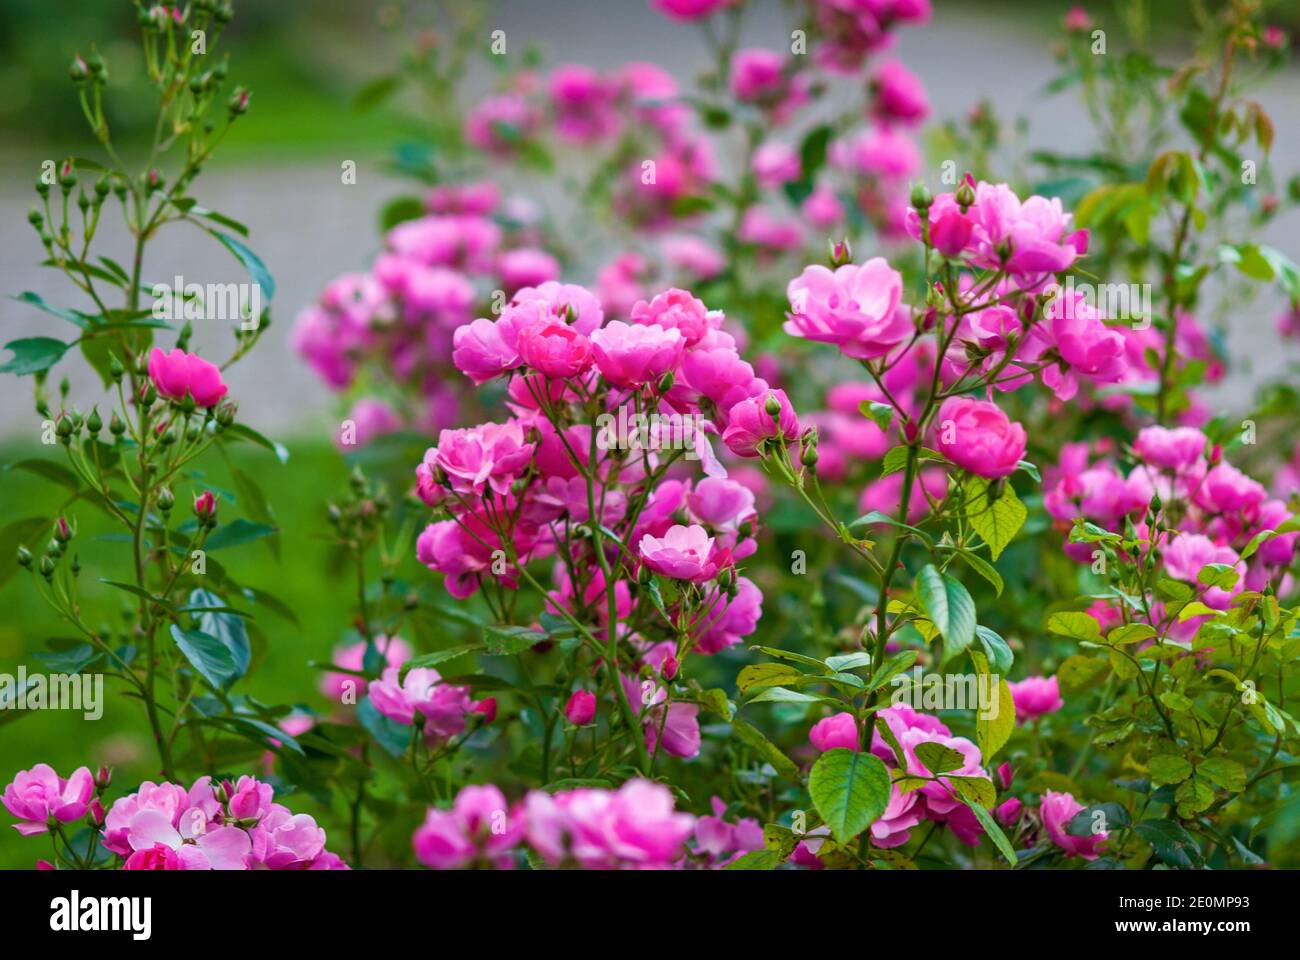 Nel giardino fioriscono le rose rosa dell'Angela, vista generale. Arbusti moderni di Kordes fiori abbondantemente per tutta la stagione Foto Stock